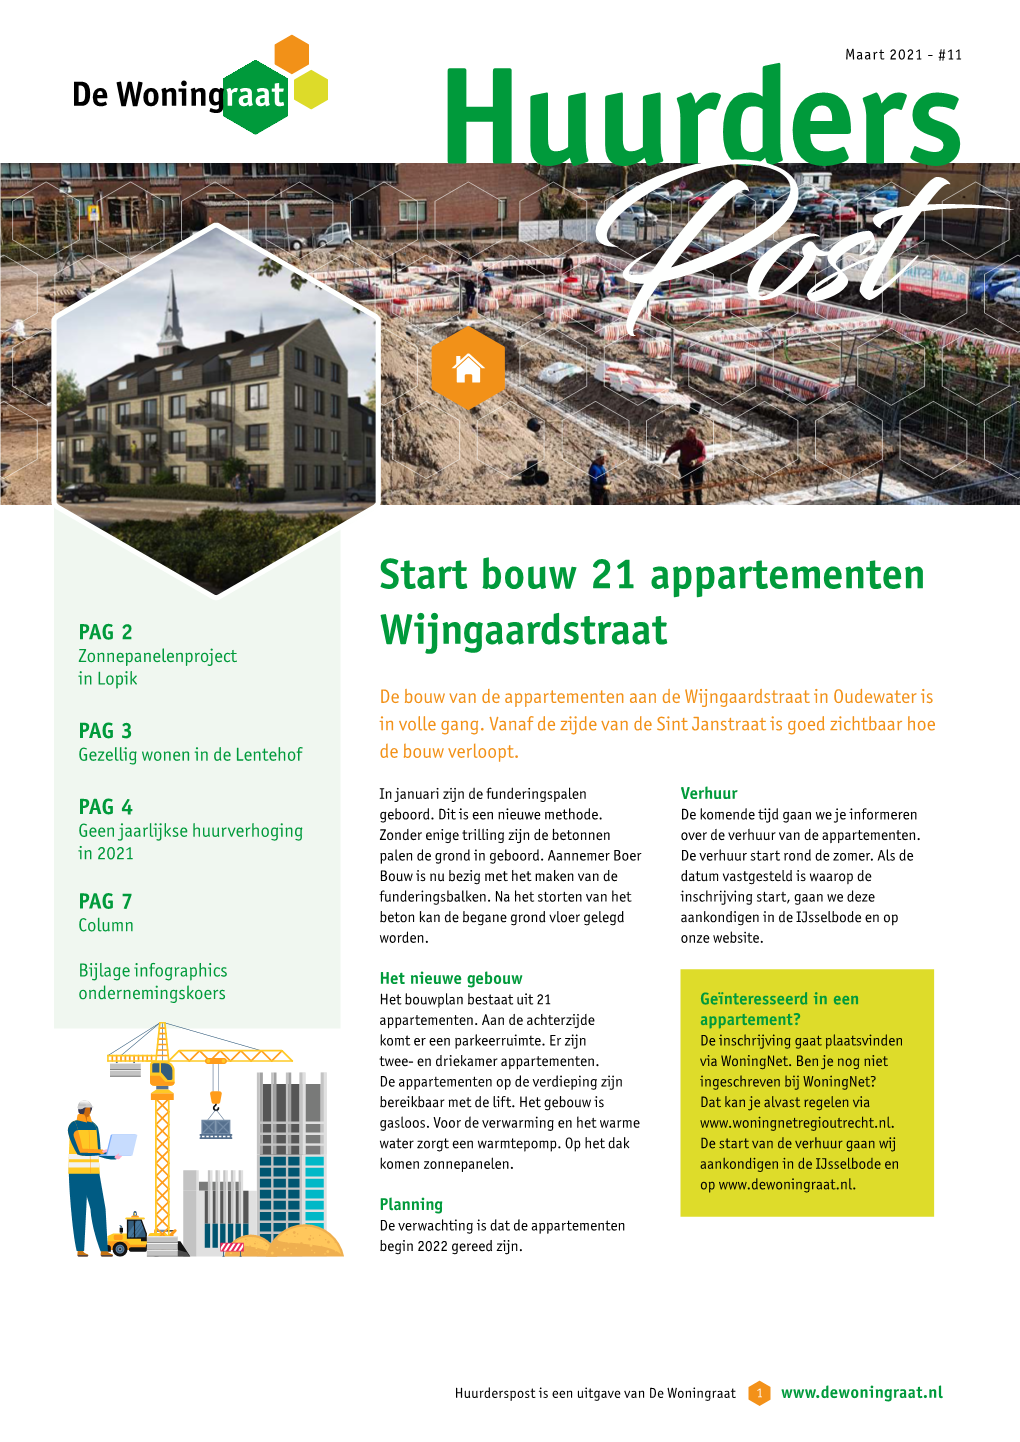 Start Bouw 21 Appartementen Wijngaardstraat